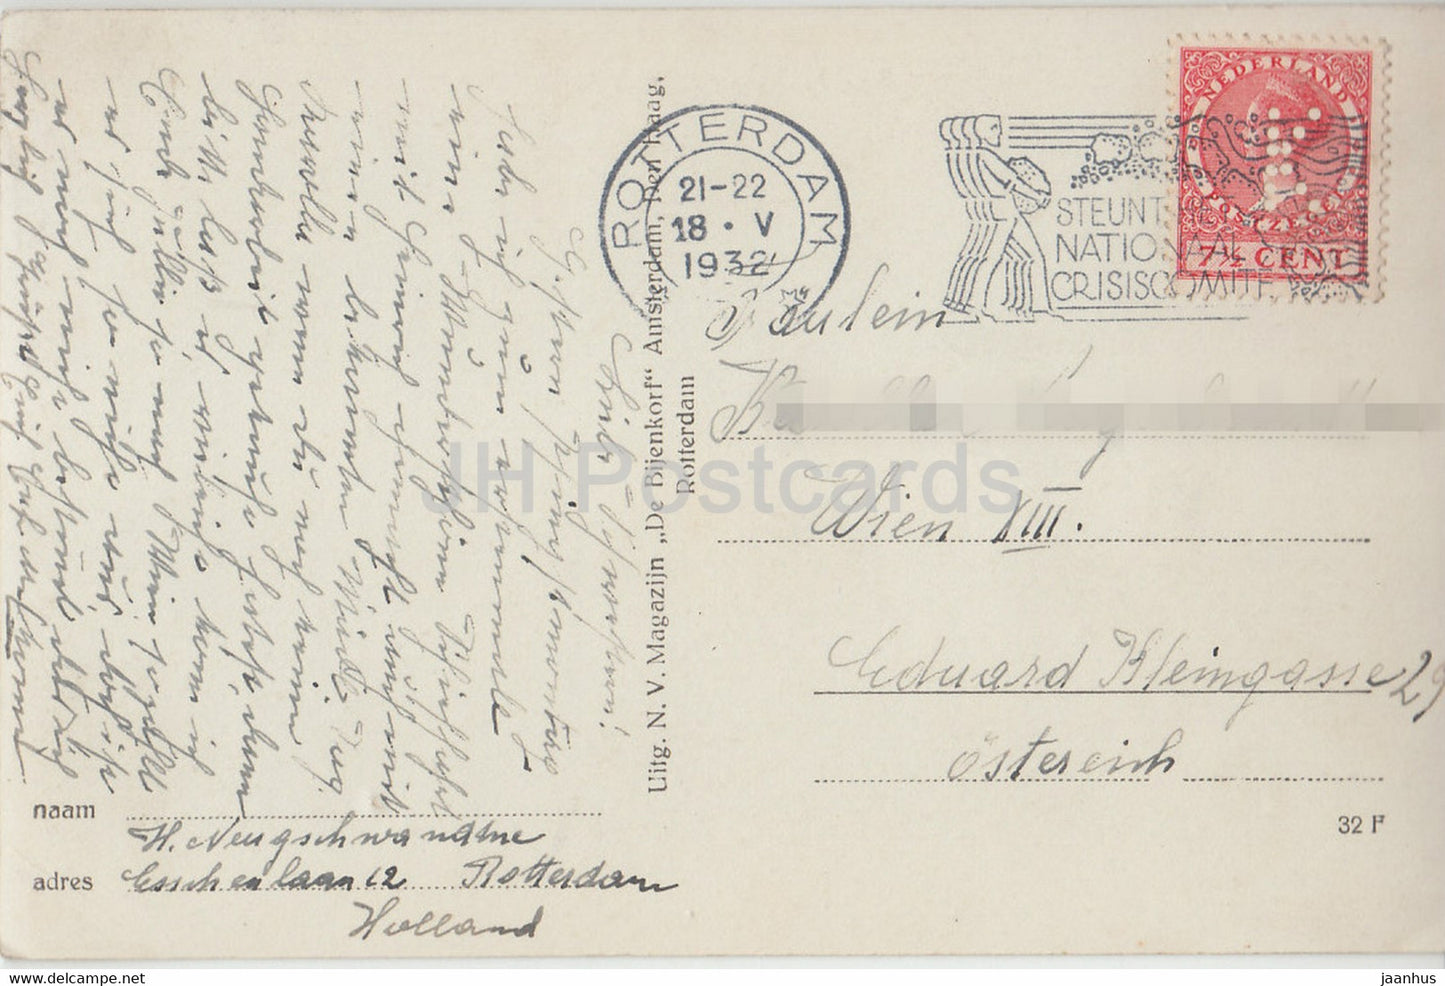 Kalme Zee – Segelboot – alte Postkarte – 1932 – Niederlande – gebraucht